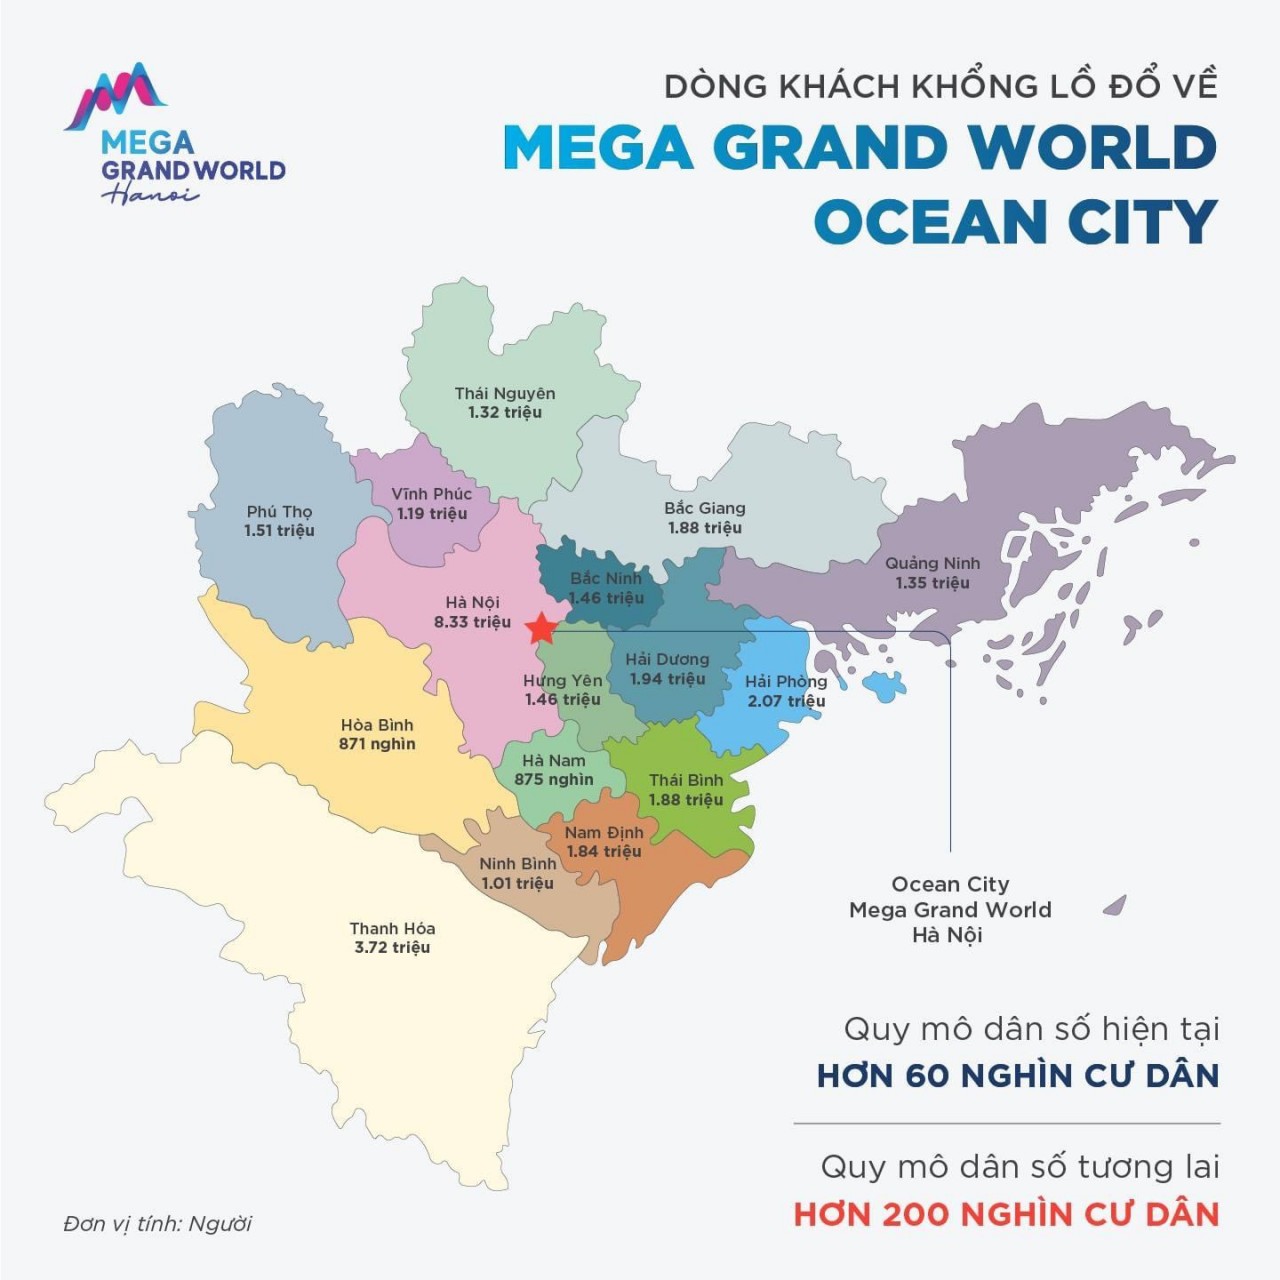 Mega Grand World khi đi vào hoạt động sẽ thu hút du khách khổng lồ không chỉ từ cư dân 3 đại đô thị, mà còn cả cư dân nội thành Hà Nội và khu vực miền Bắc lân cận.